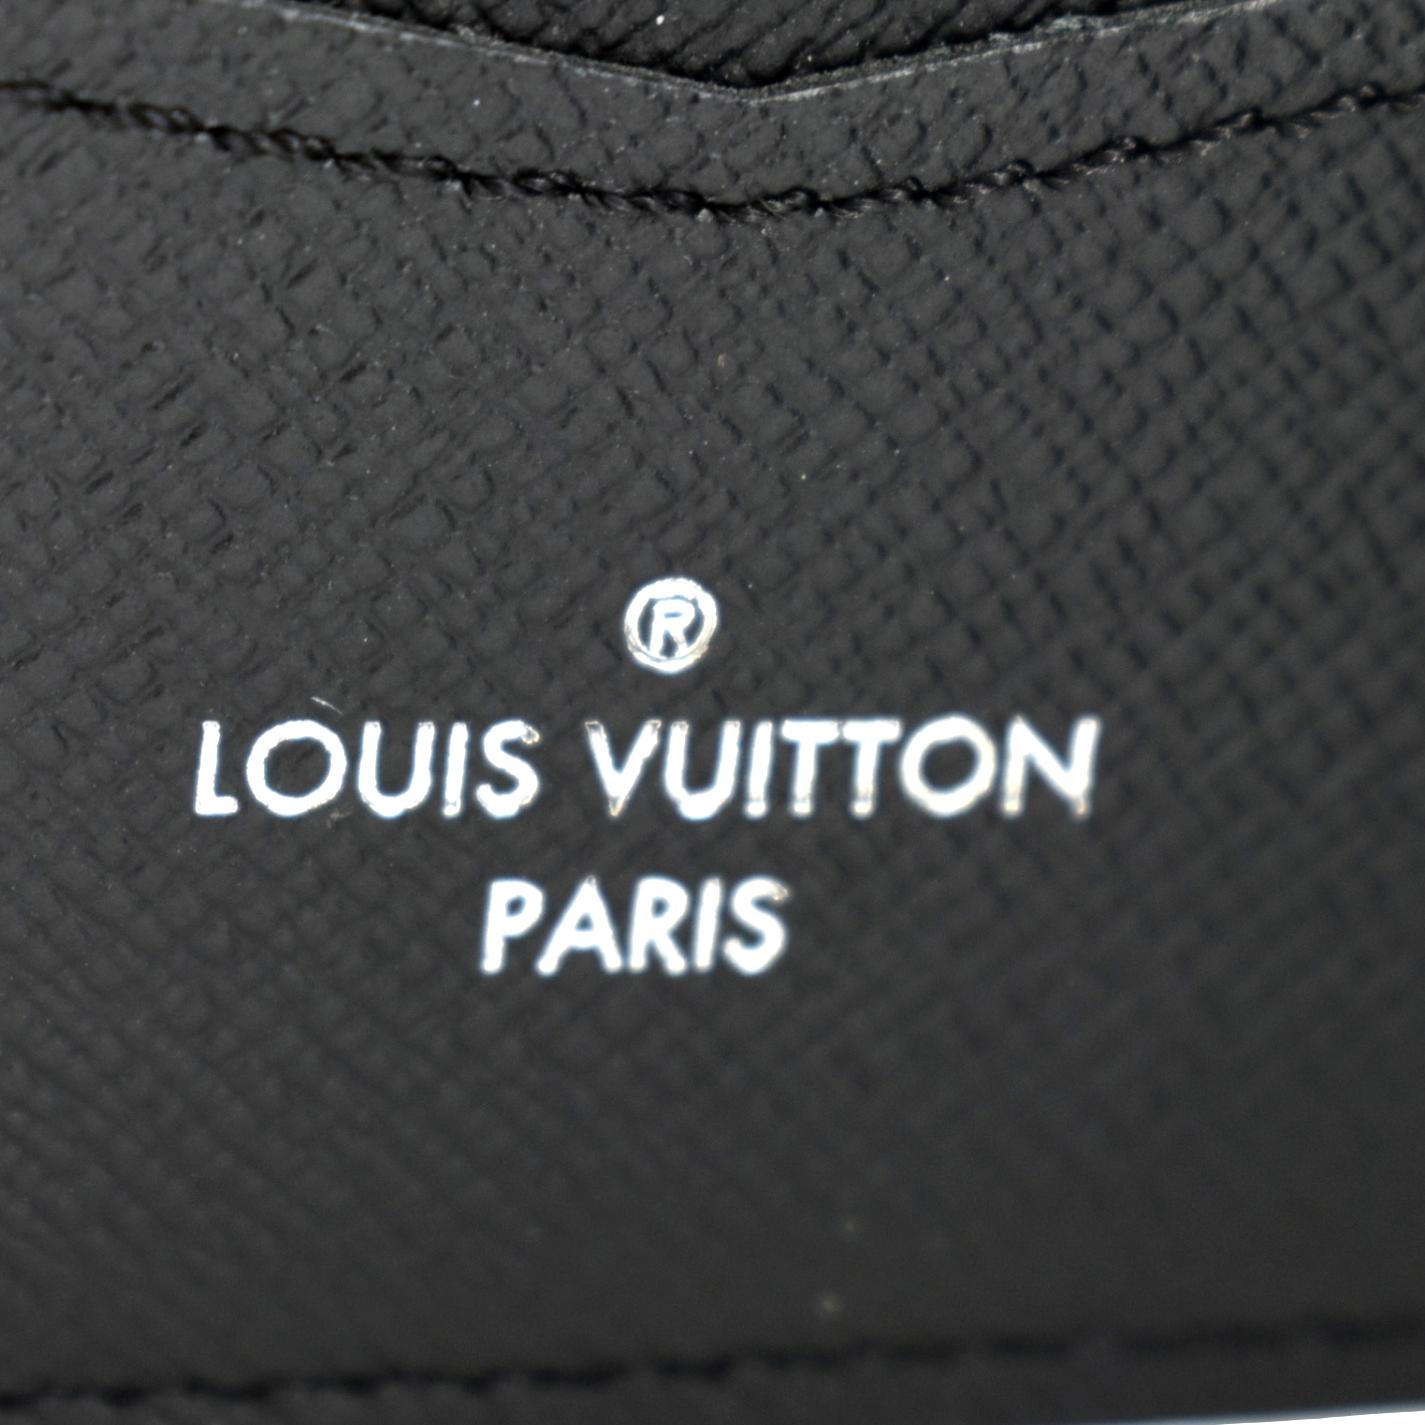 Louis Vuitton Monogram Eclipse Multiple Wallet | MTYCI